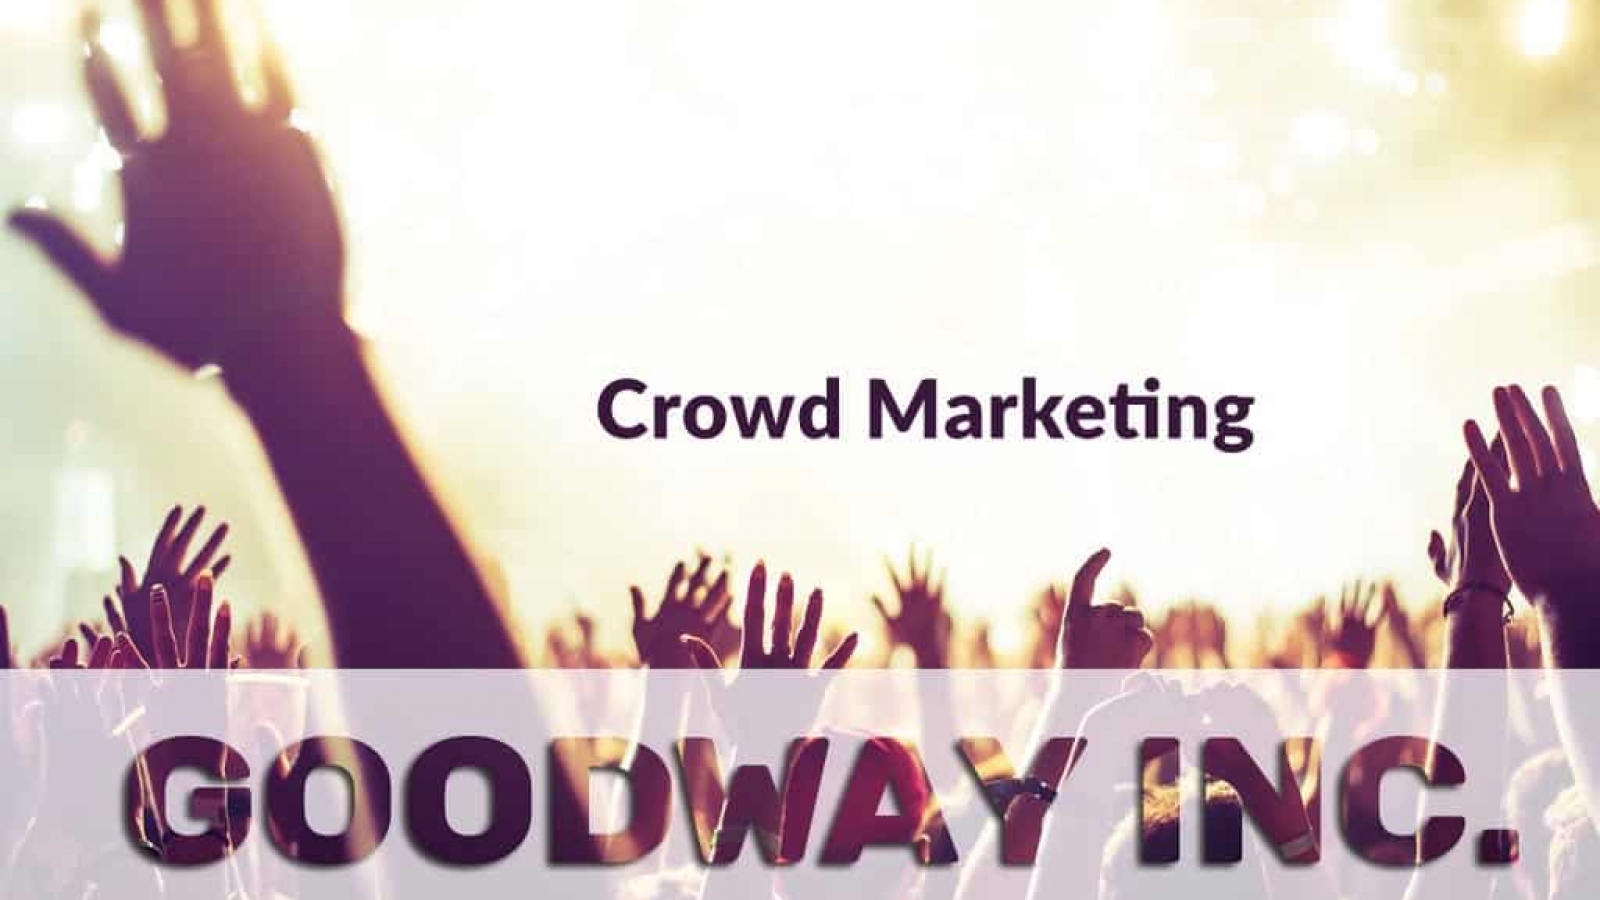 Crowd-marketing как способ продвижения